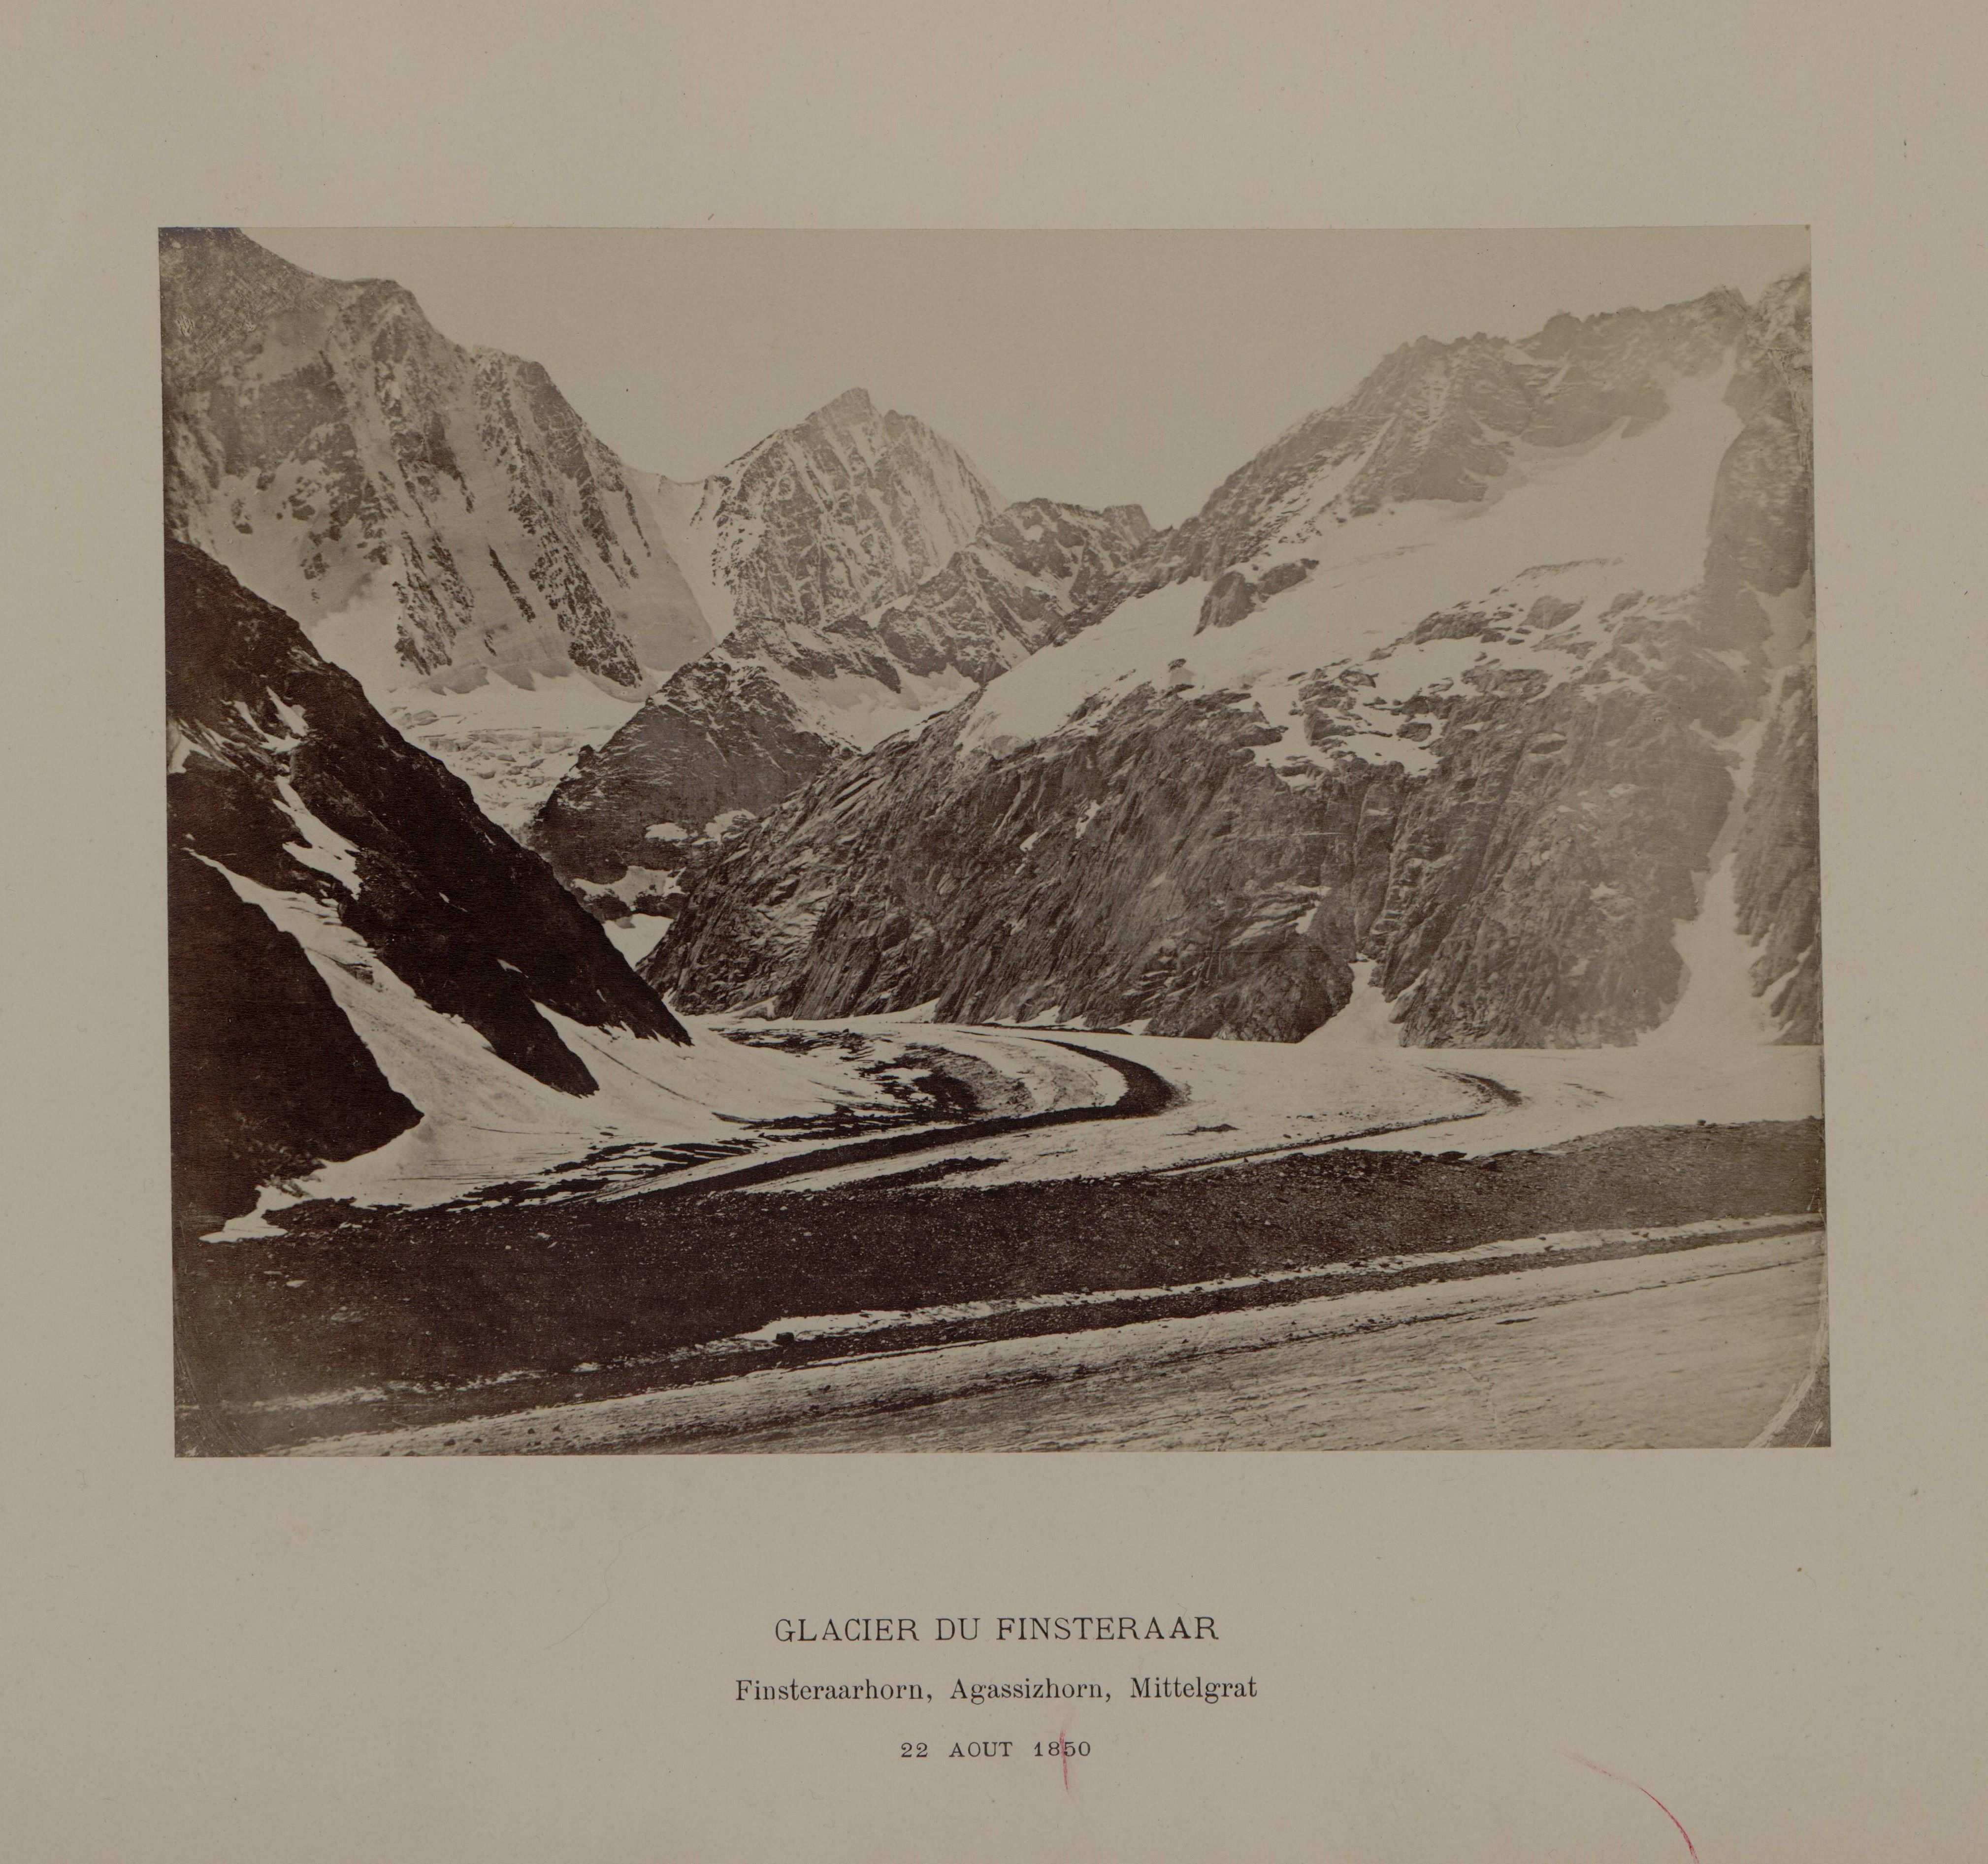 Glacier du Finsteraar